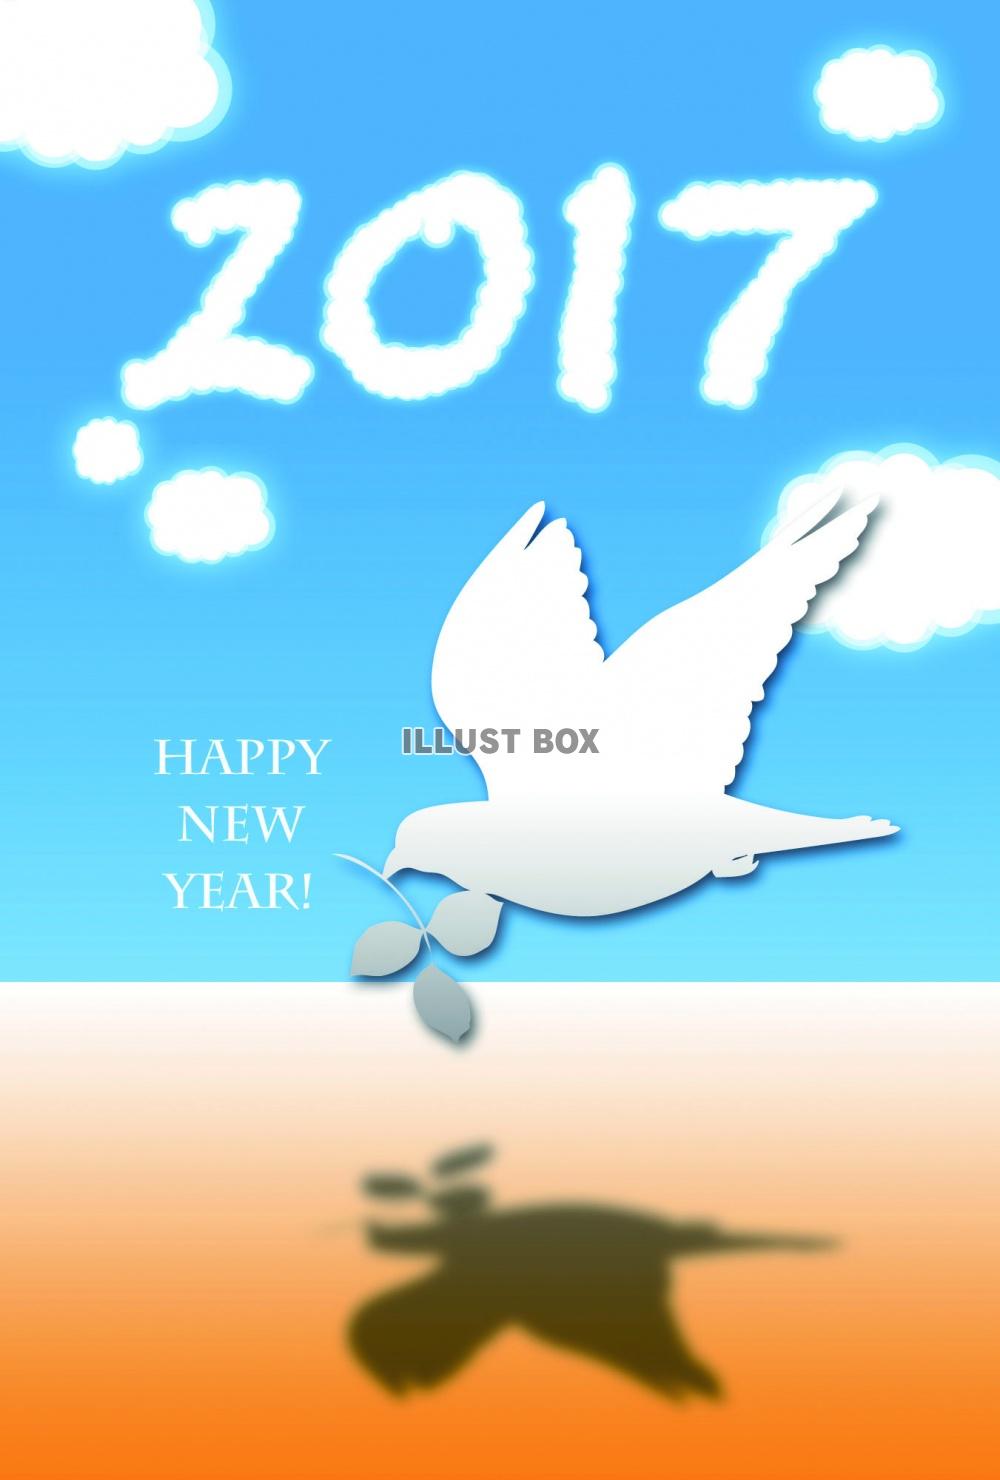 無料イラスト 雲と地平線と鳥 鳩 年賀状素材 17 酉年